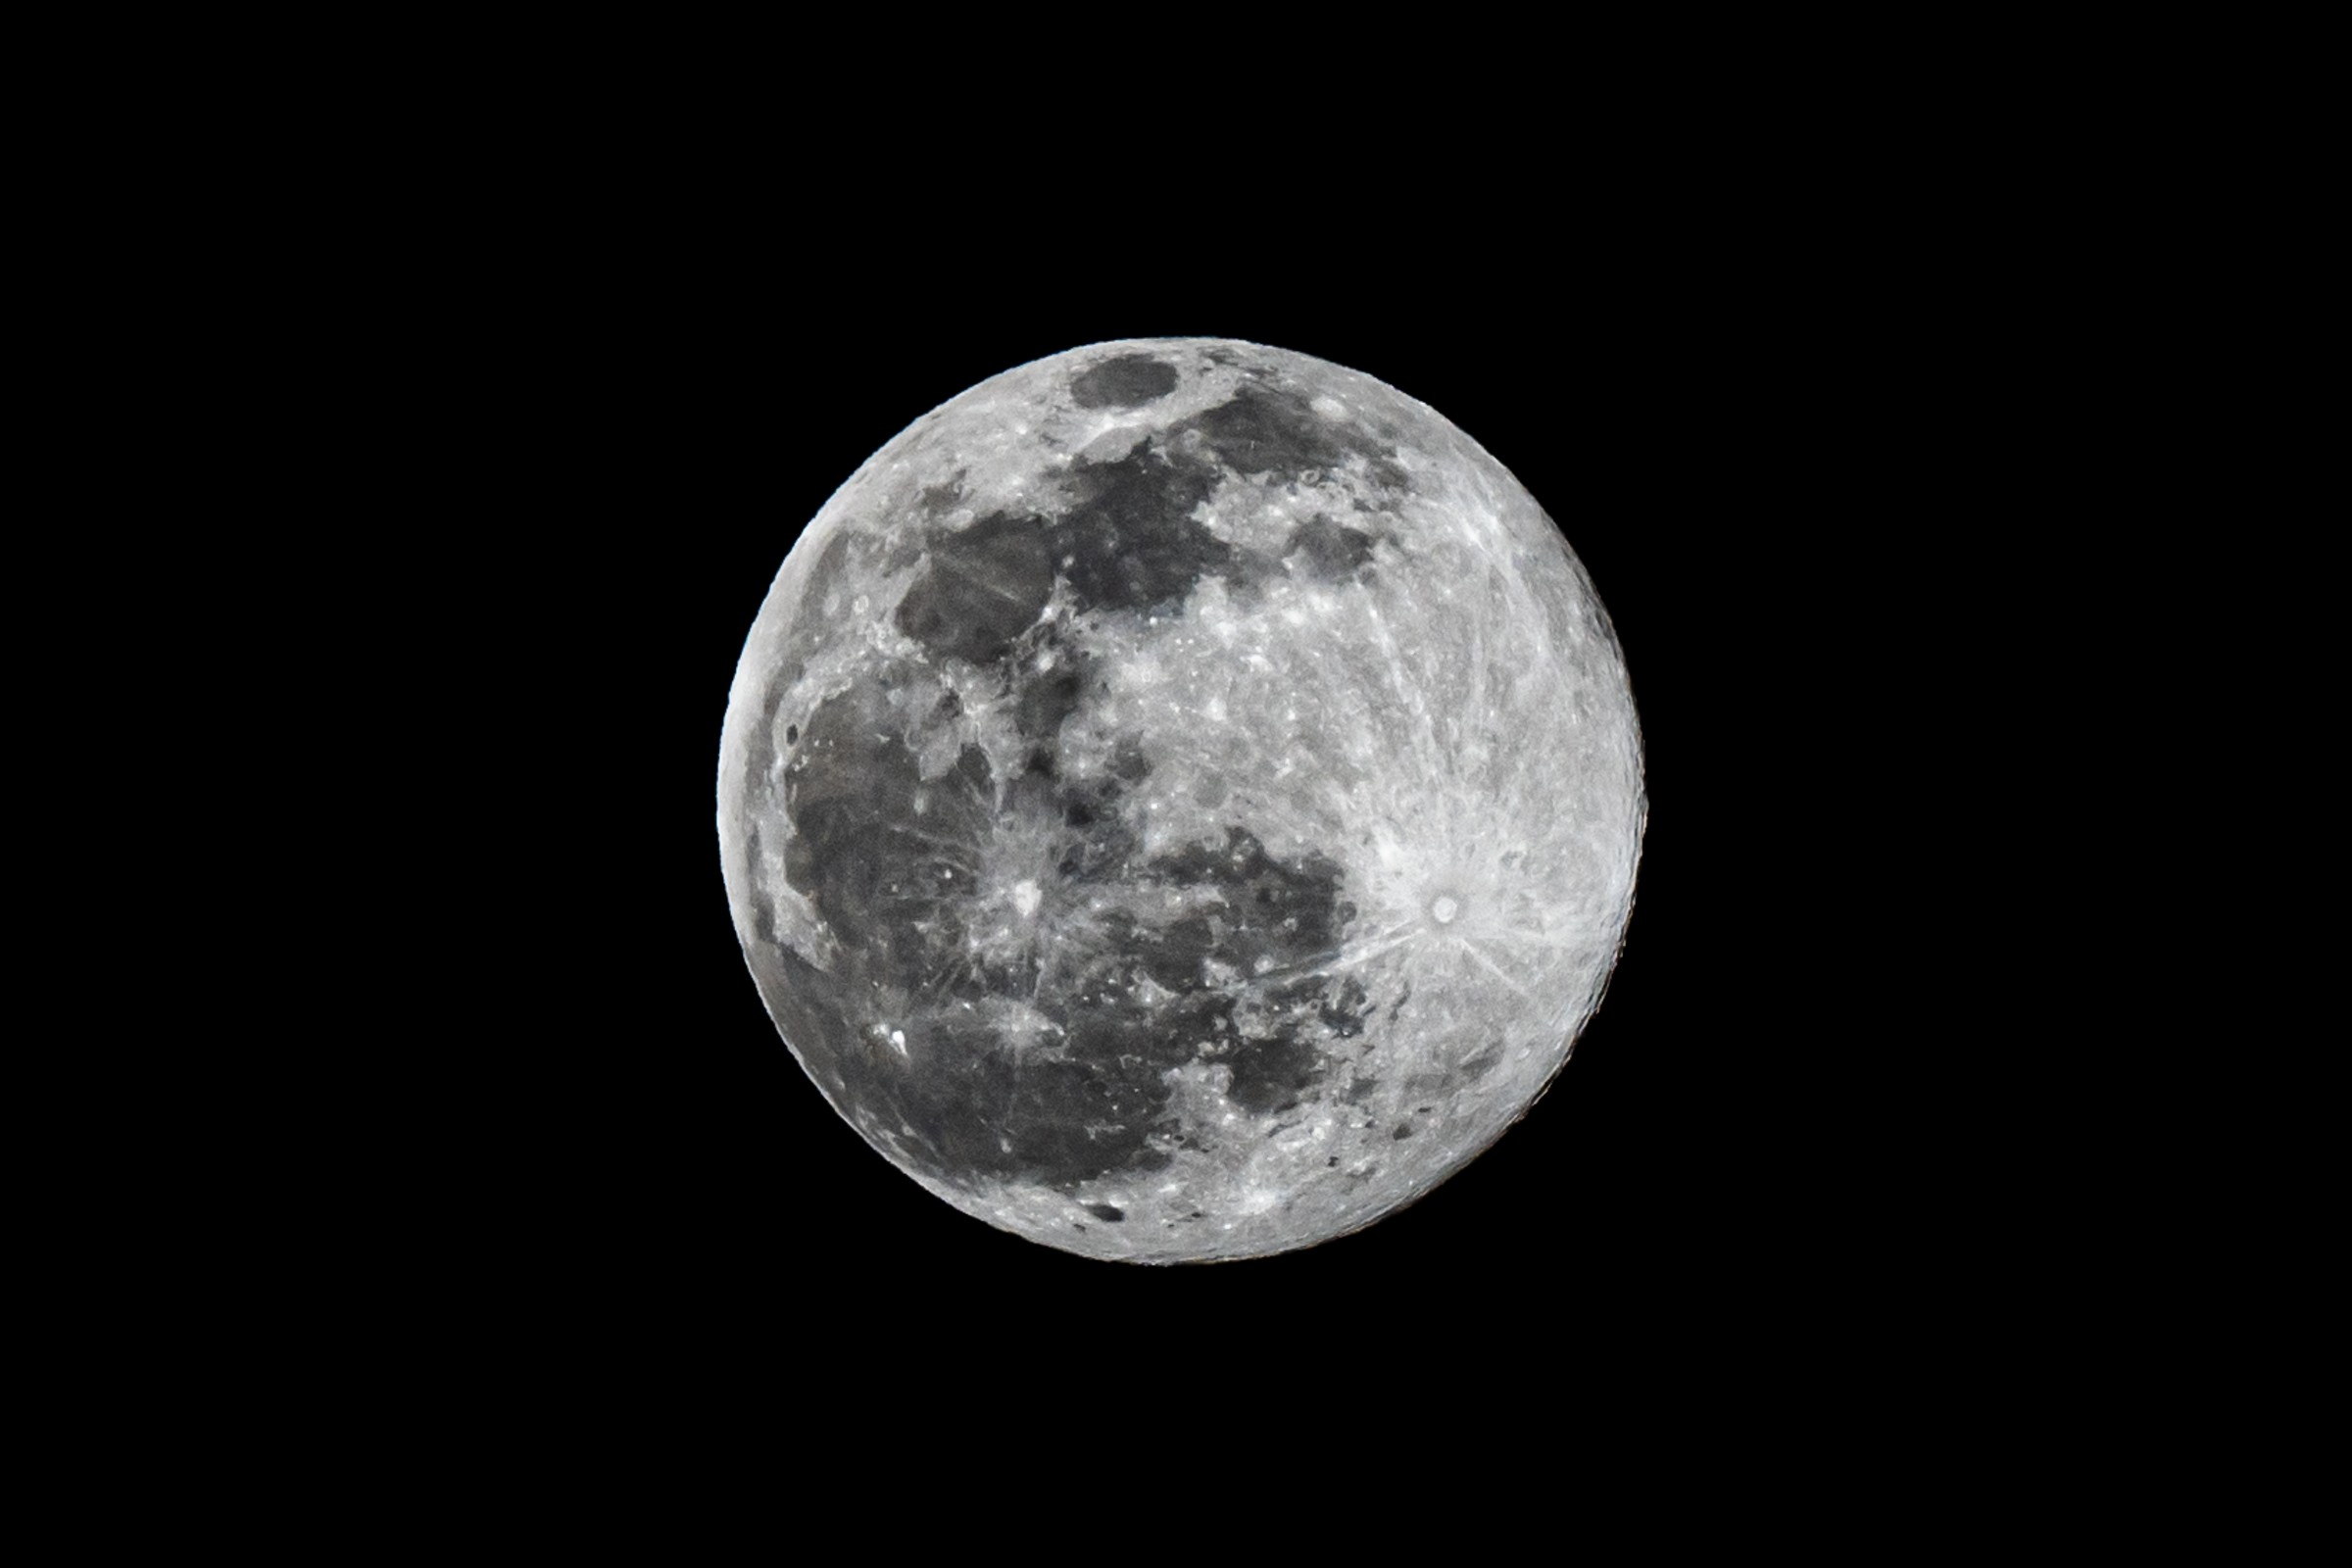 9日から10日にかけて10月の満月 ハンターズムーン が見ごろ 月のそばで輝く木星も ロケットニュース24